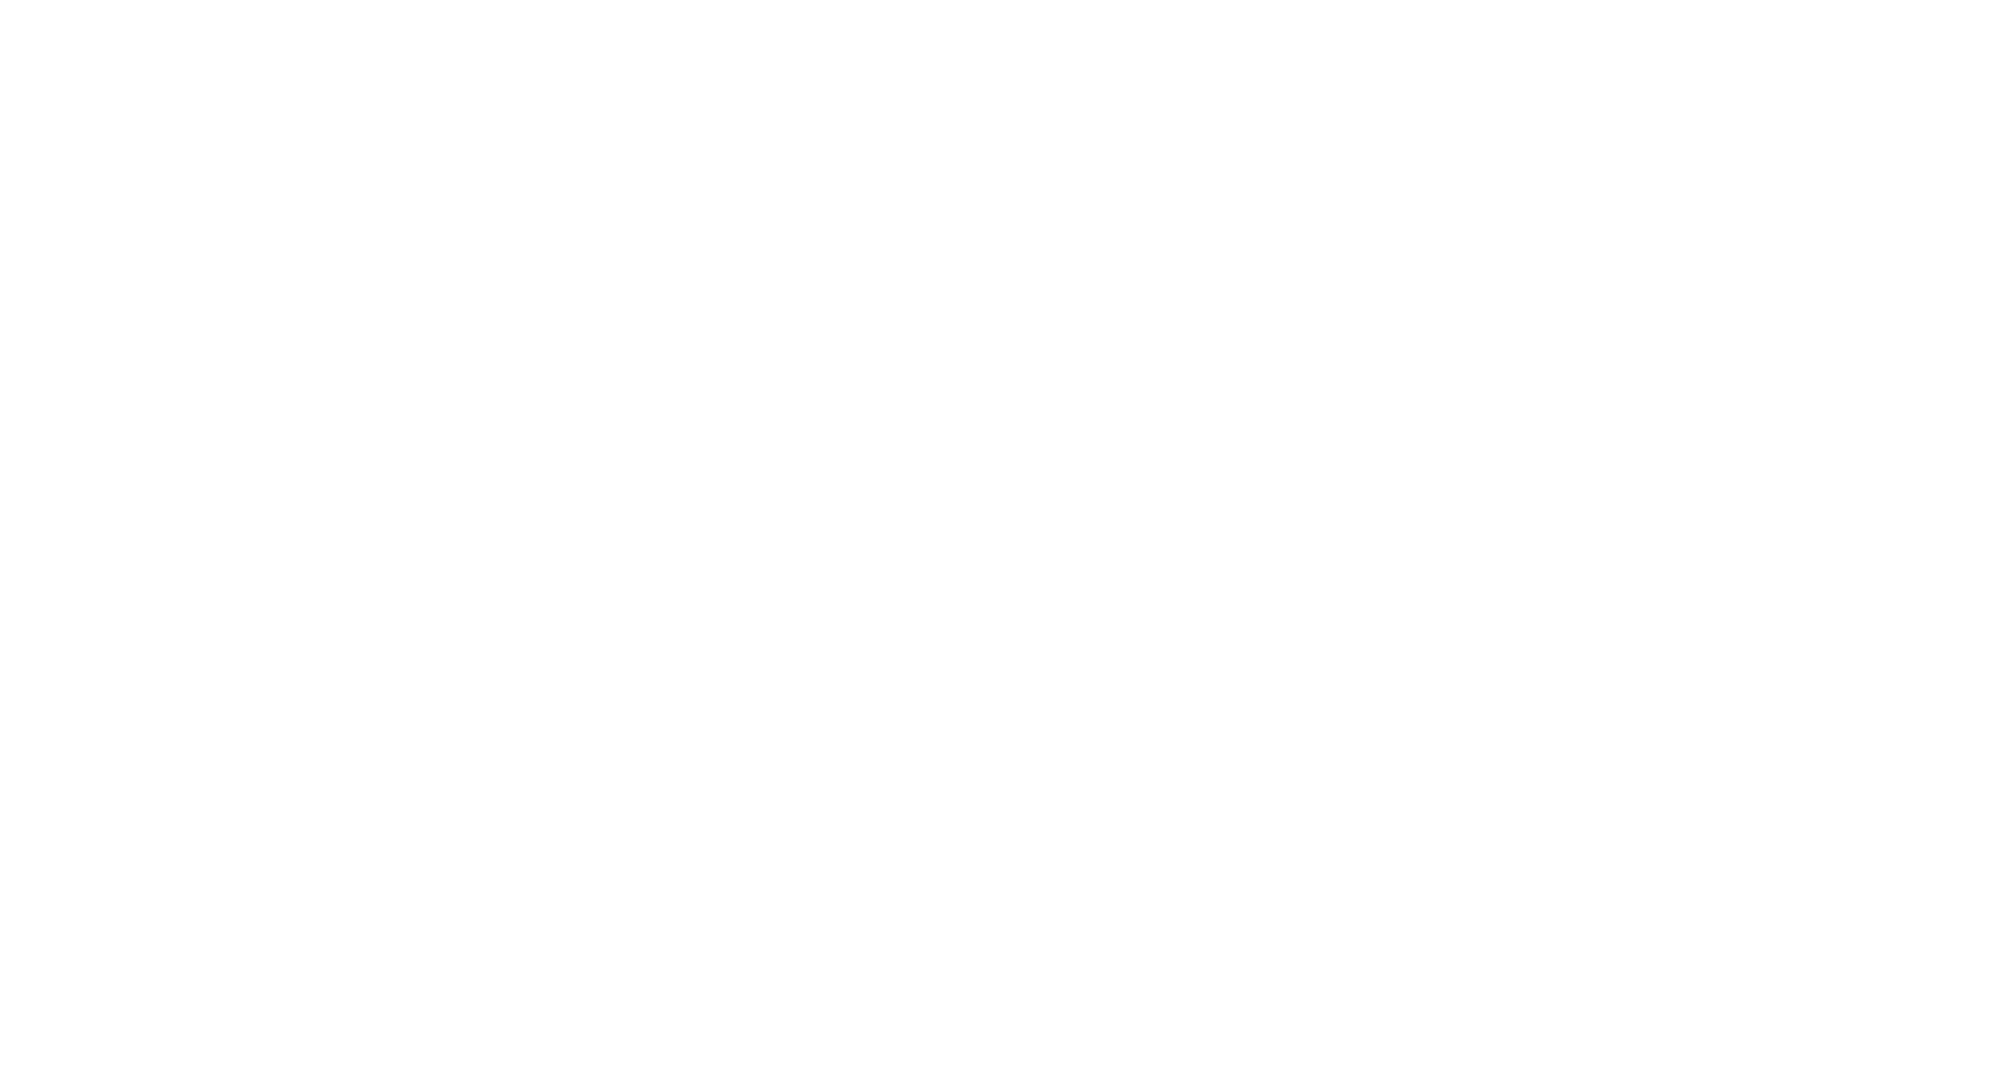 Cross Creek Presbyterian Church